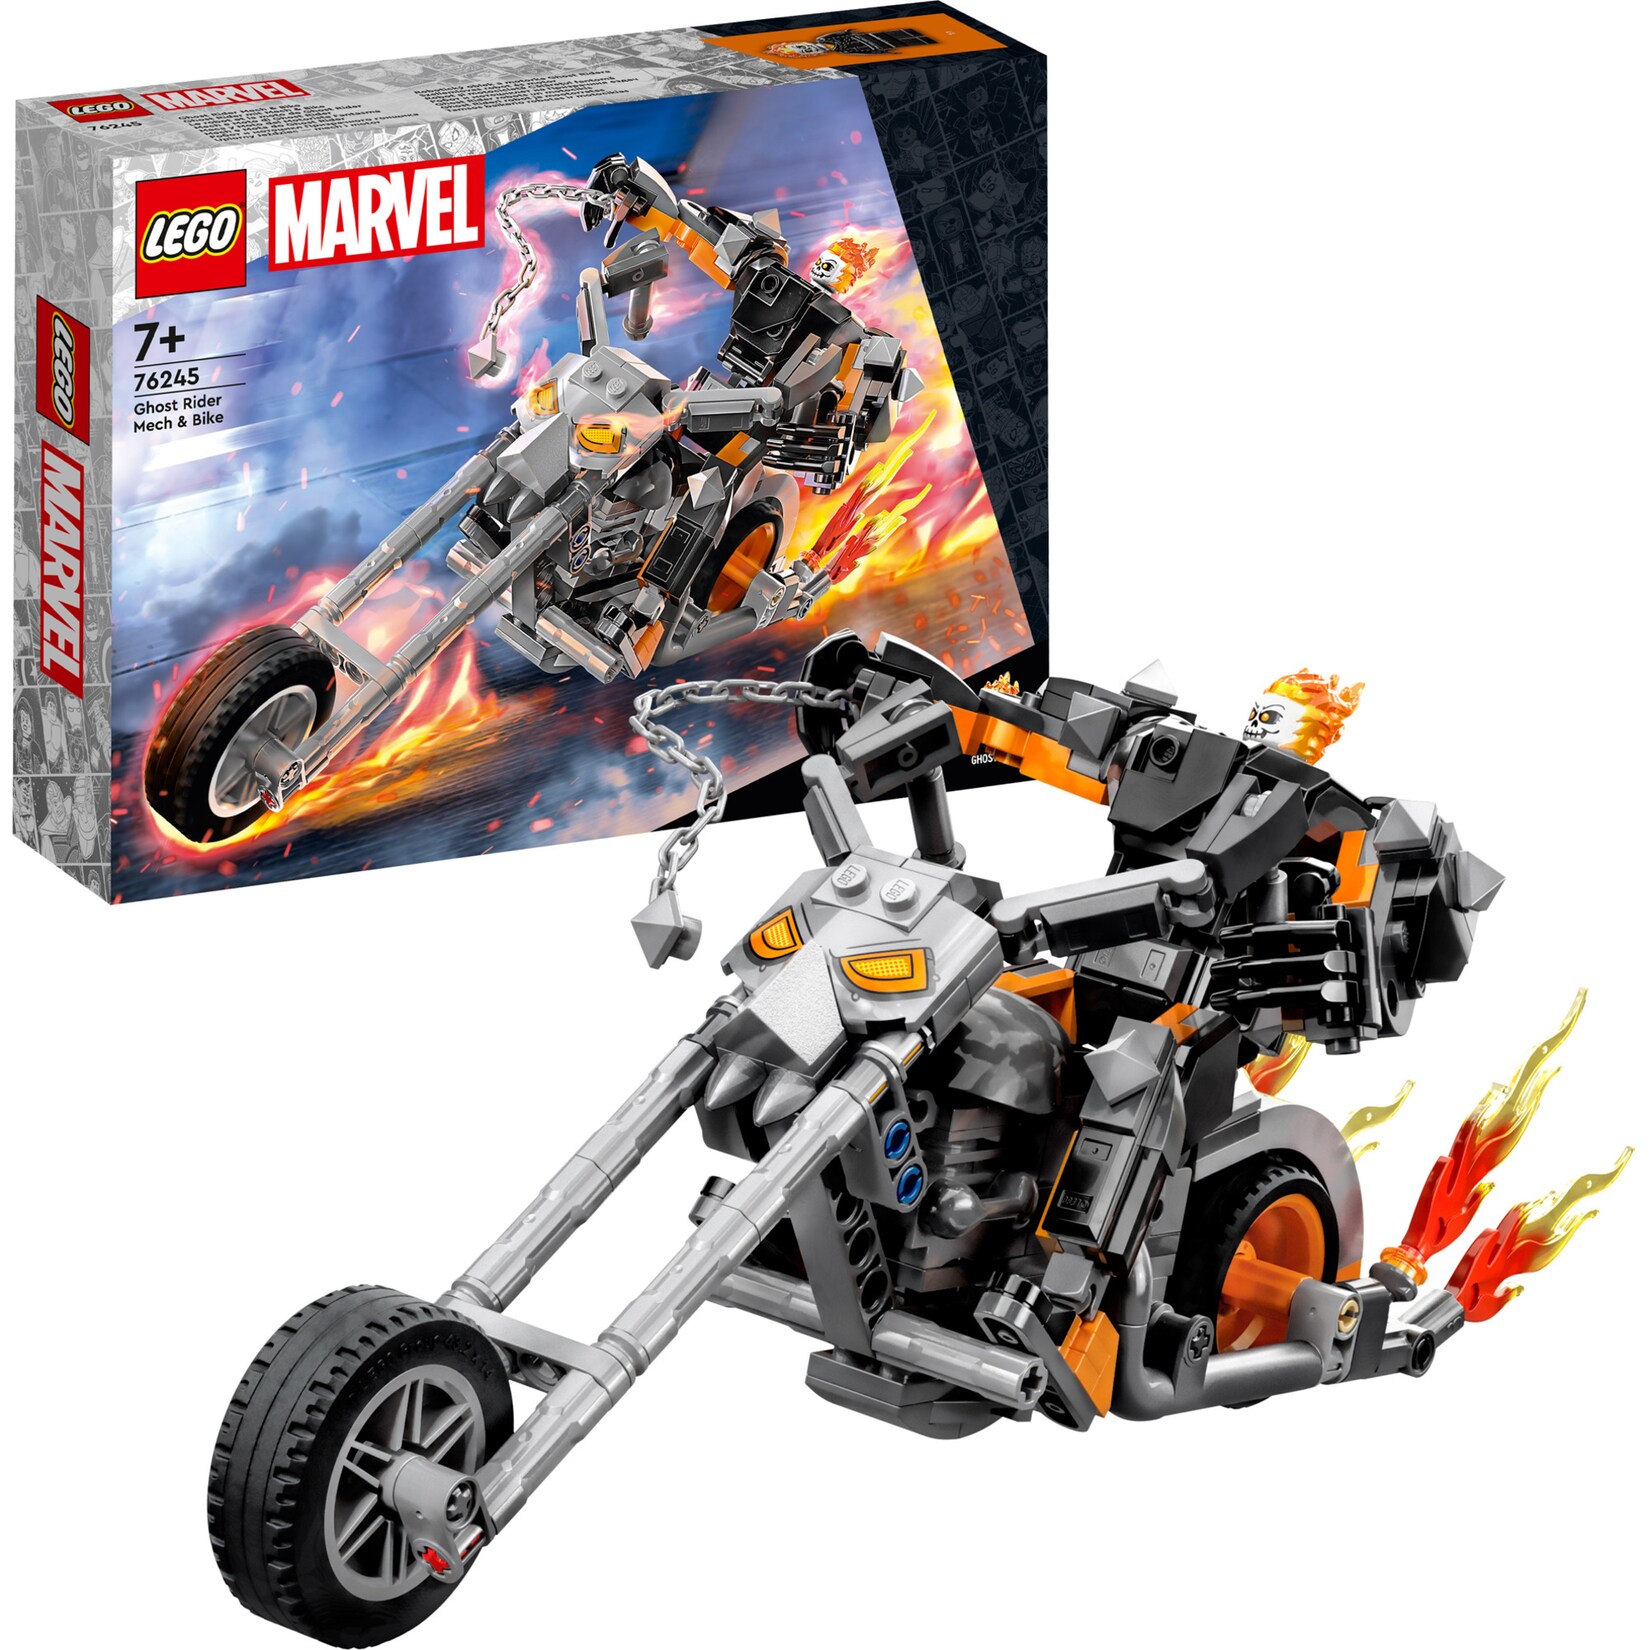 LEGO Konstruktionsspielzeug Marvel Ghost Rider mit Mech & Bike